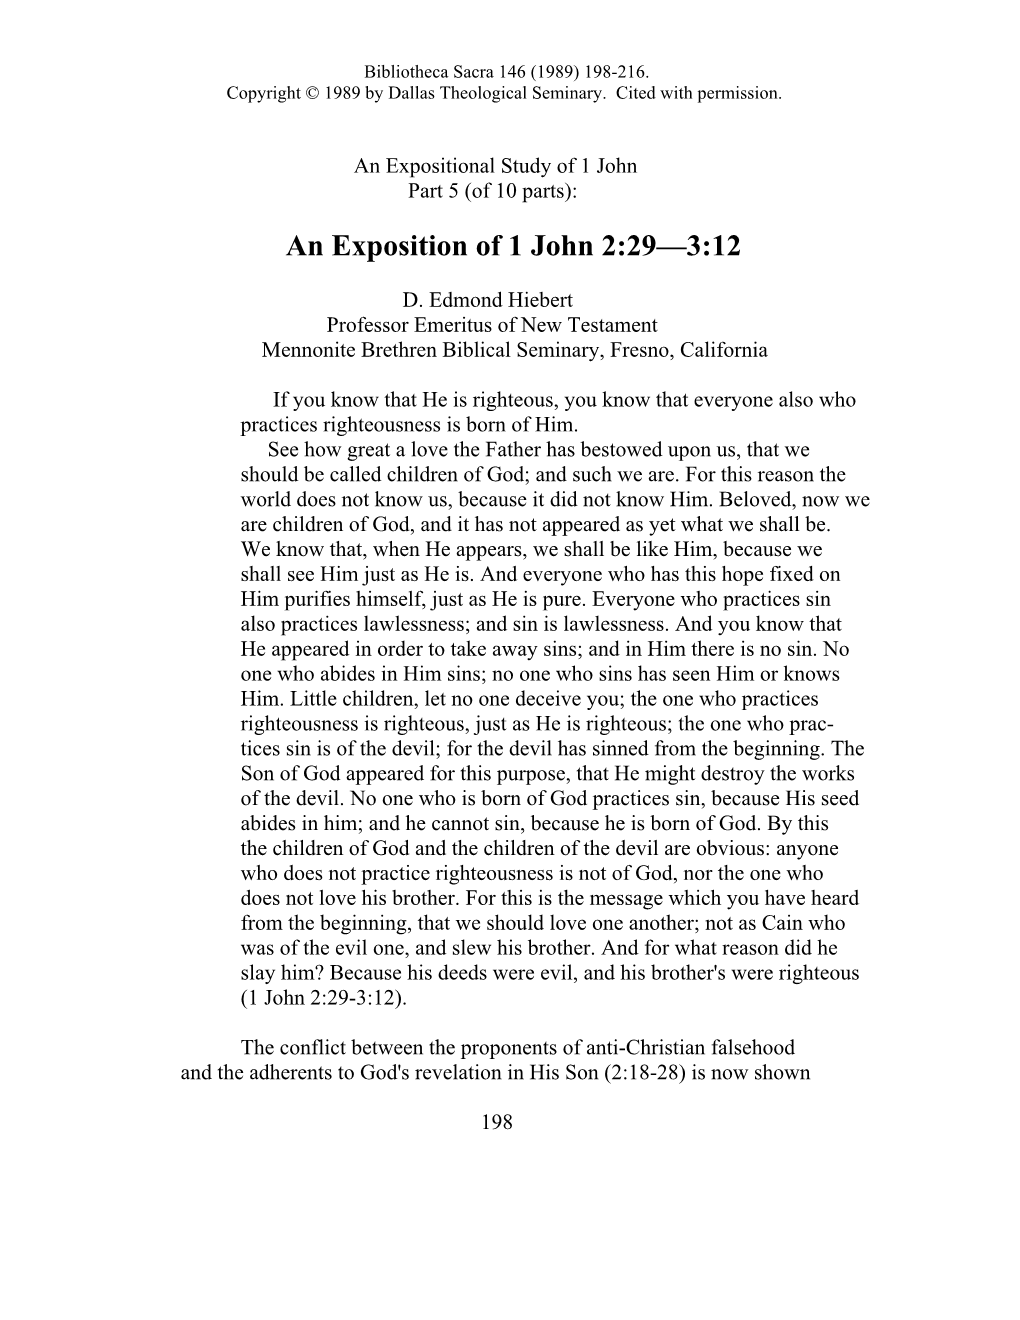 An Exposition of 1 John 2:29-3:12